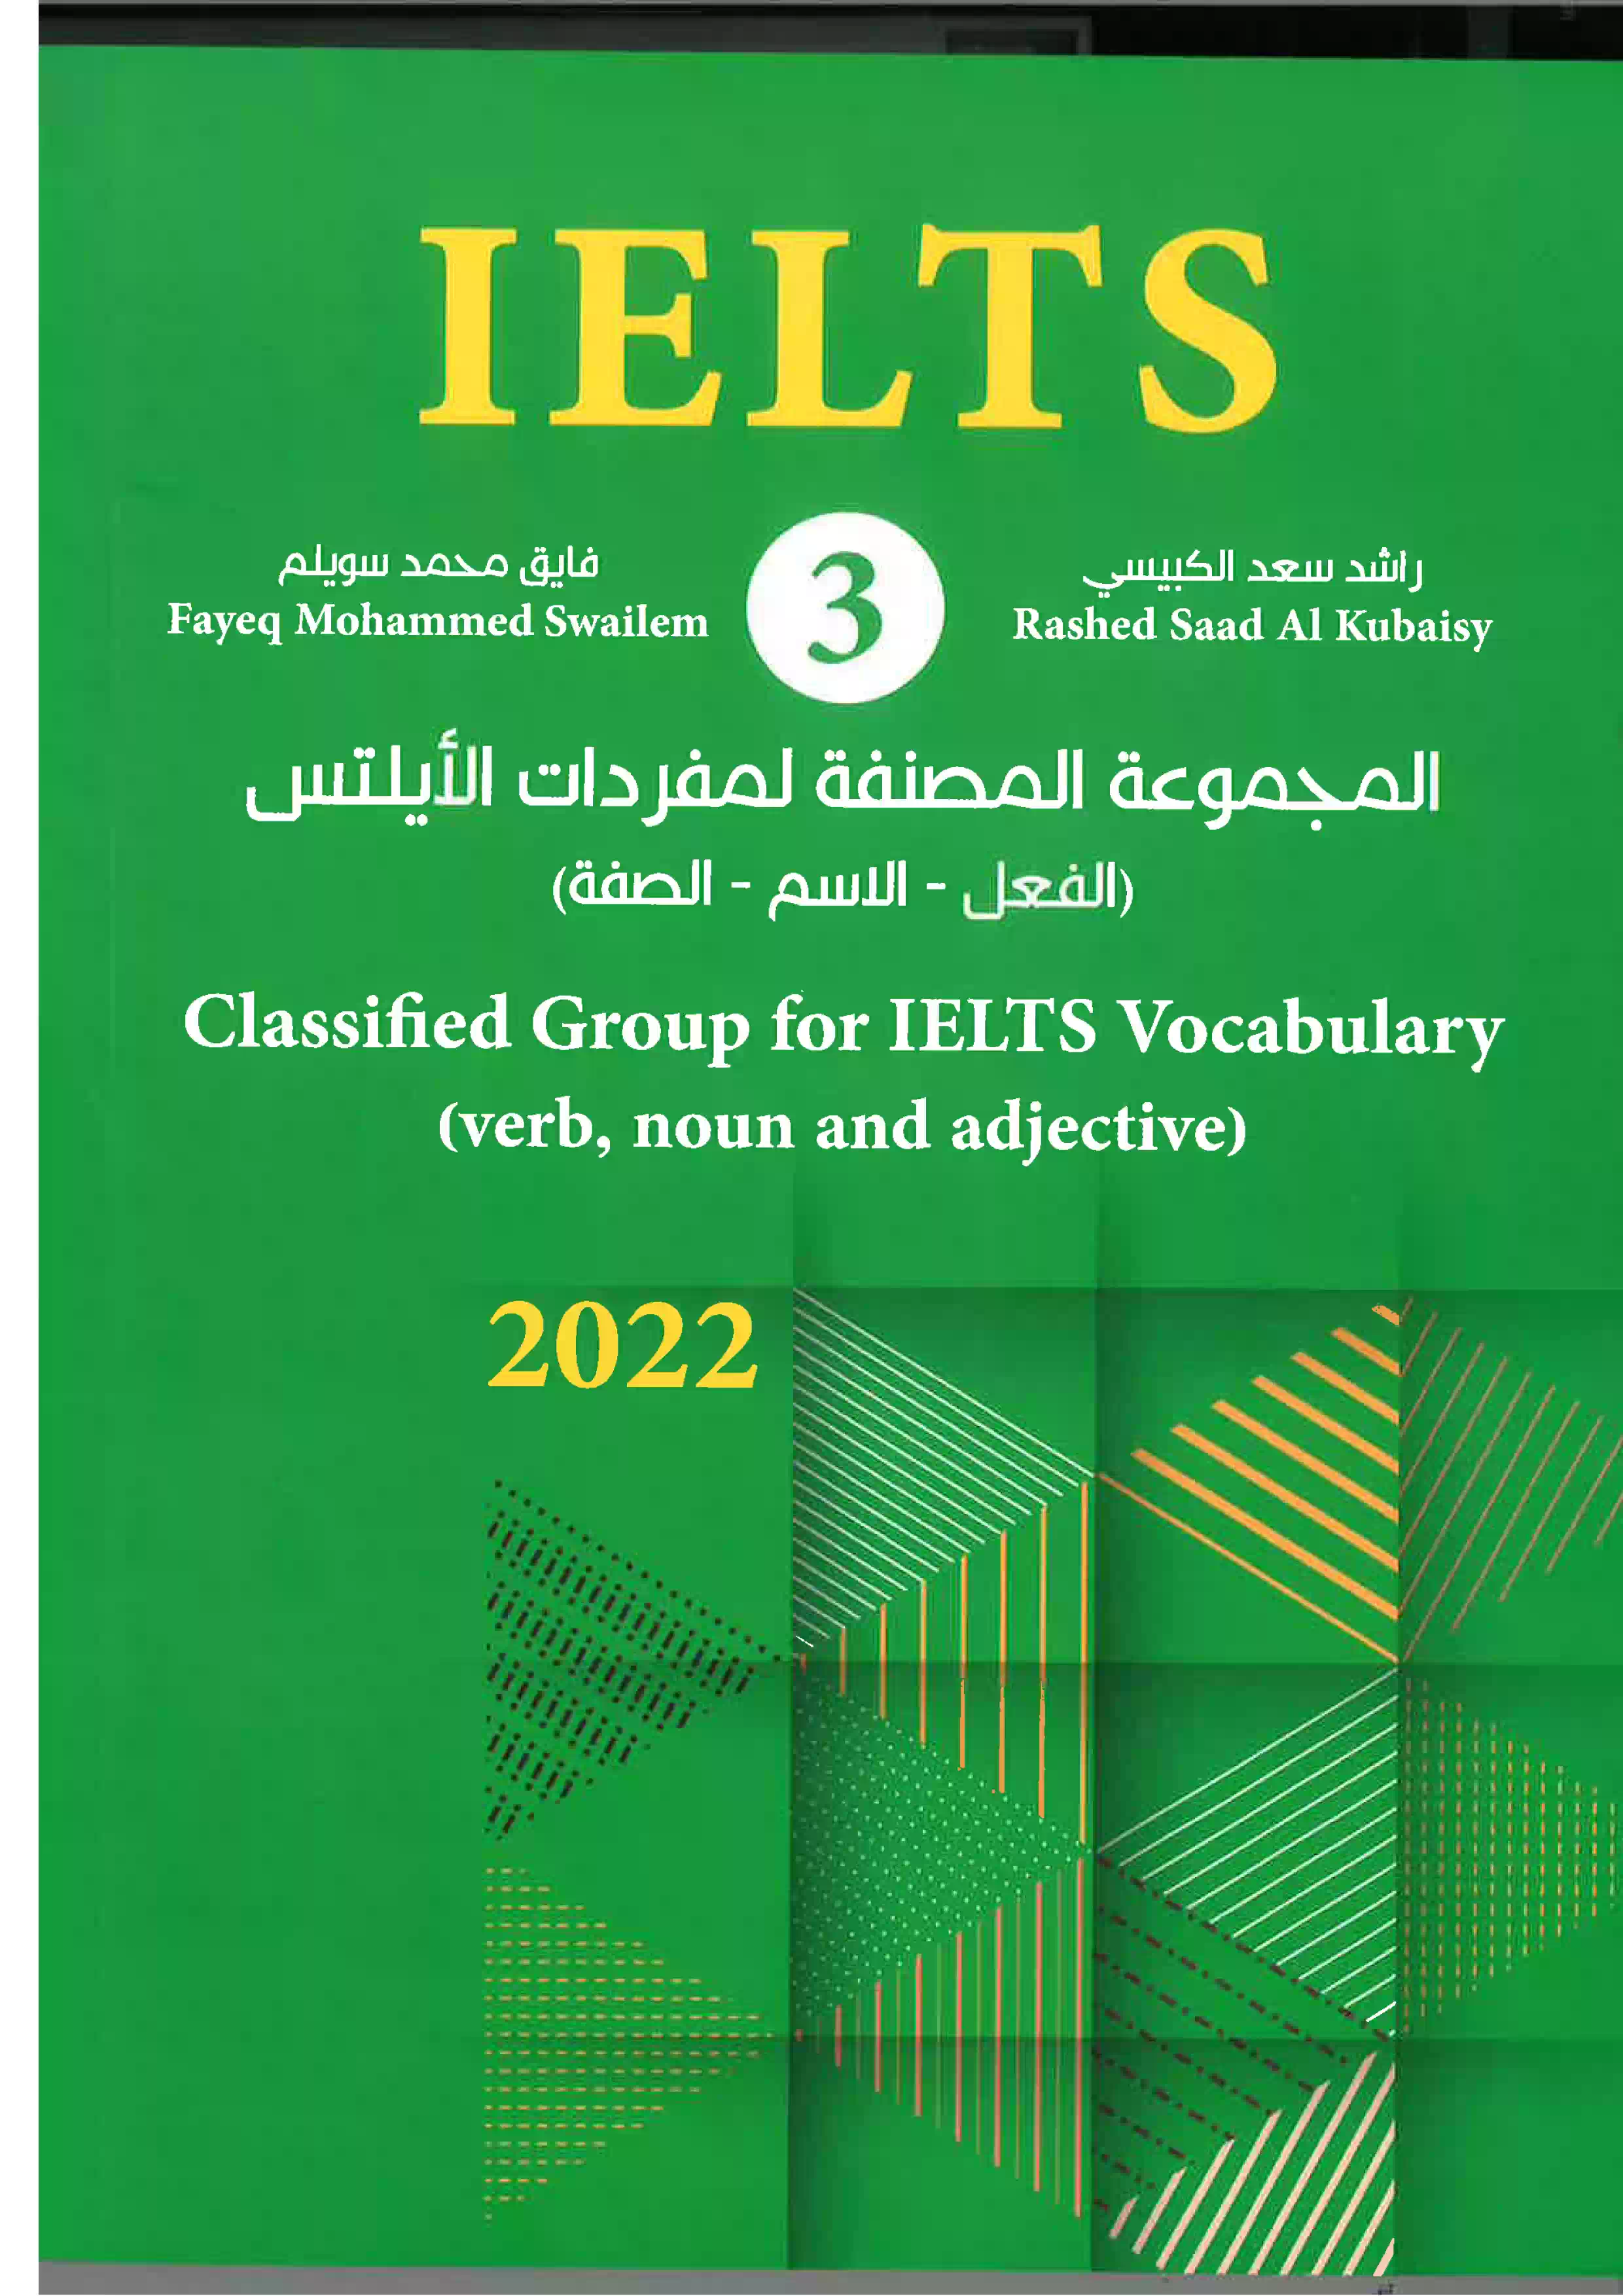 كتاب الايلتس 3- عربي انجليزي